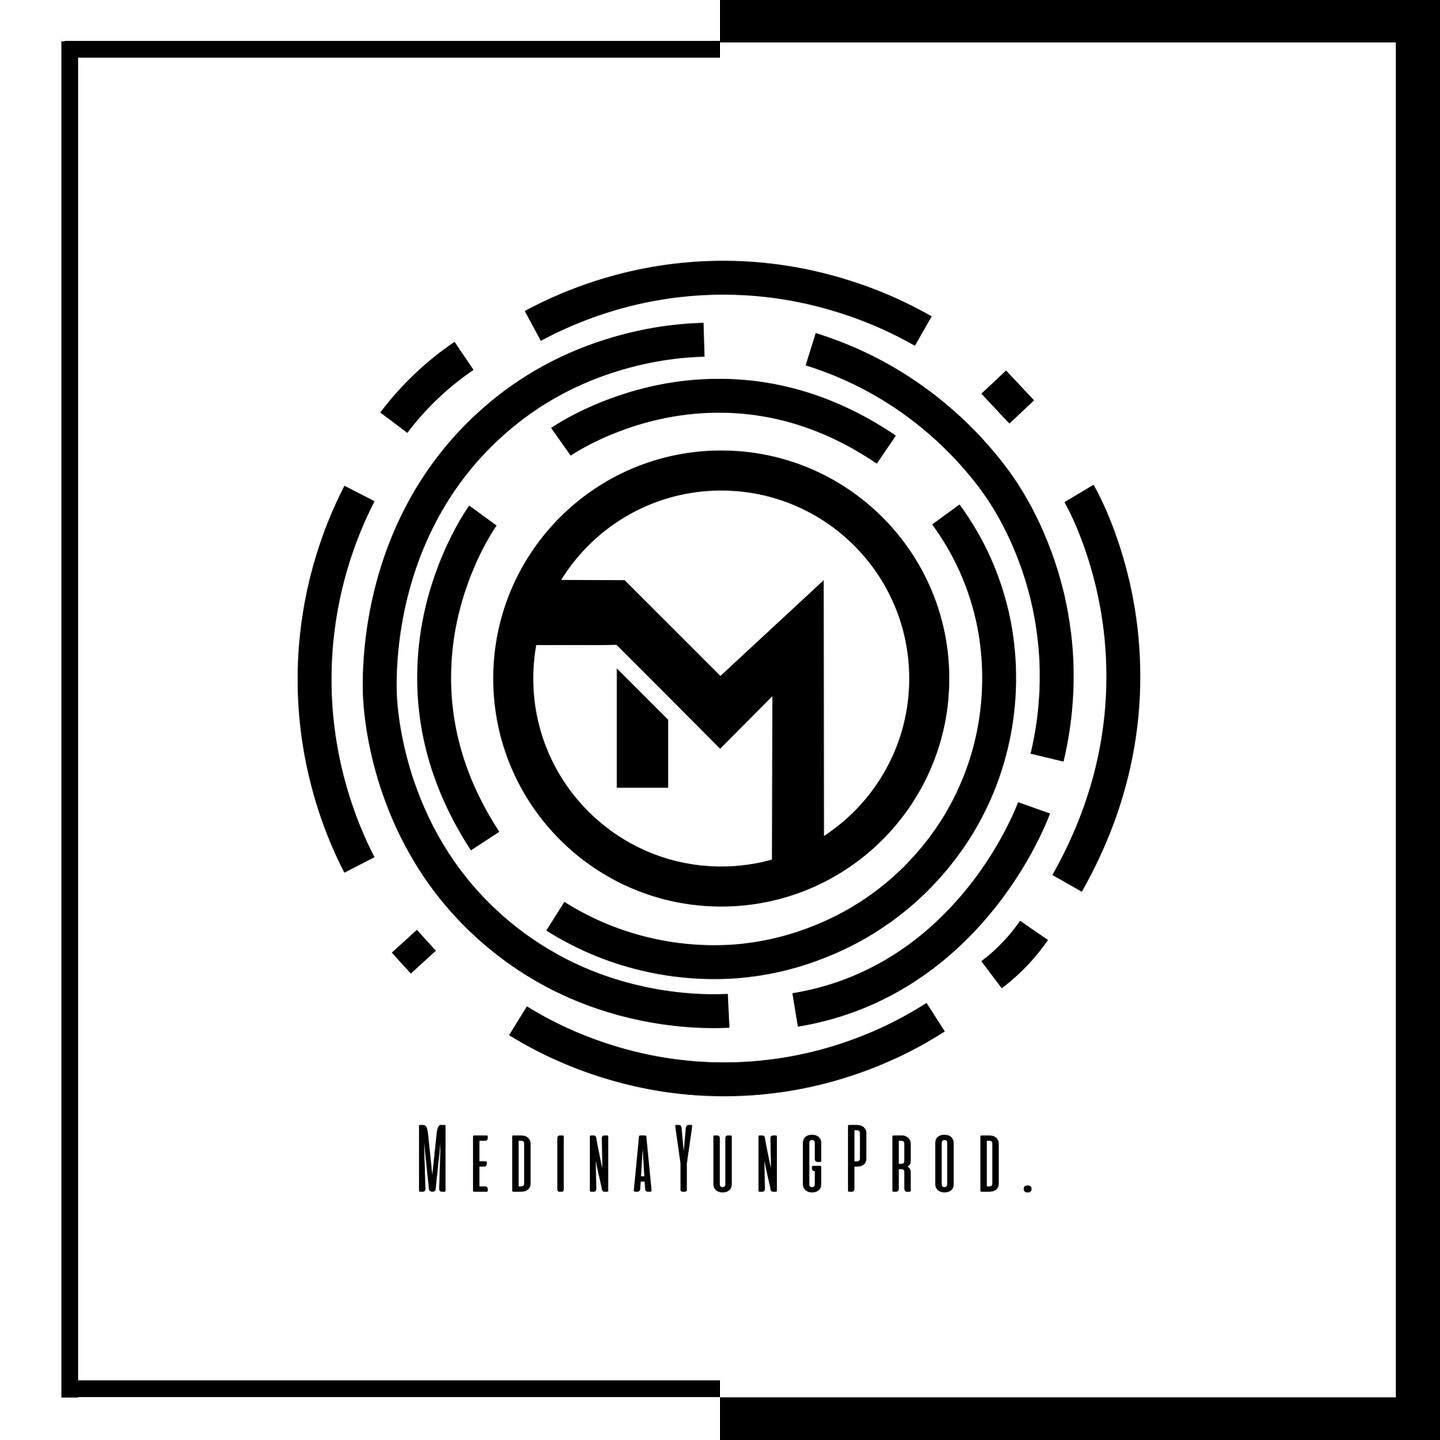 Recent logo design &bull;
&bull;
&bull;
&bull;
&bull;
#artprocess #ink #illustration #design #designer #logo #blackandwhite #logodesinger #logos #modern #music #production #productiondesign #media #musicproducer #positivevibes #logosuz #logomaker #lo